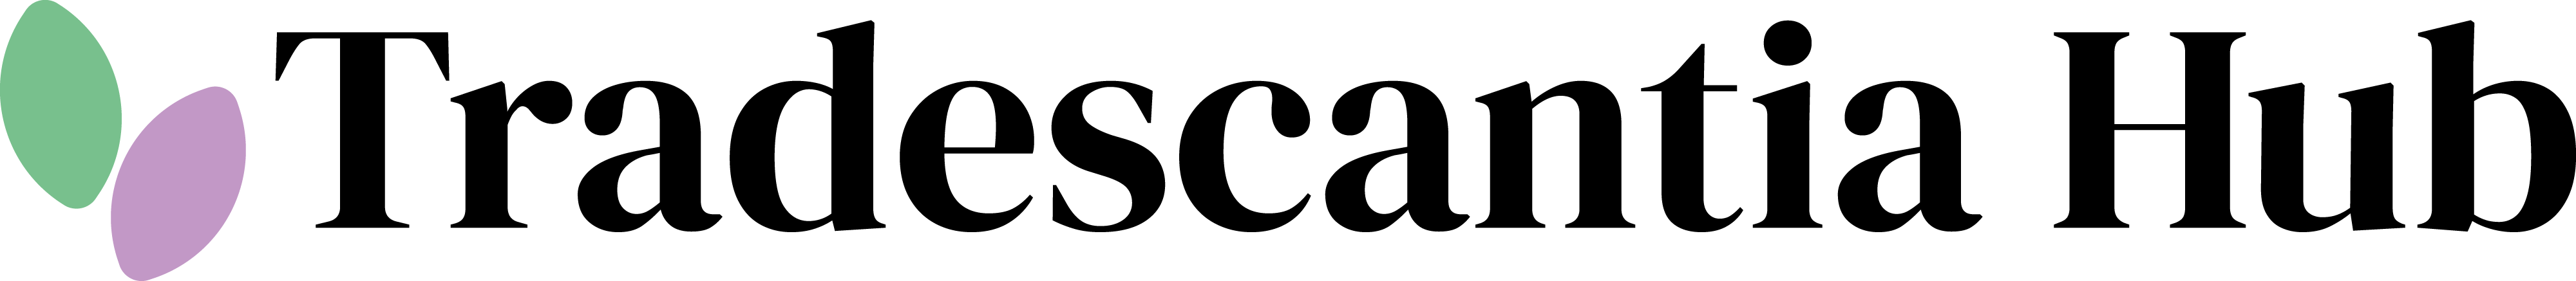 Tradescantia Hub logo.